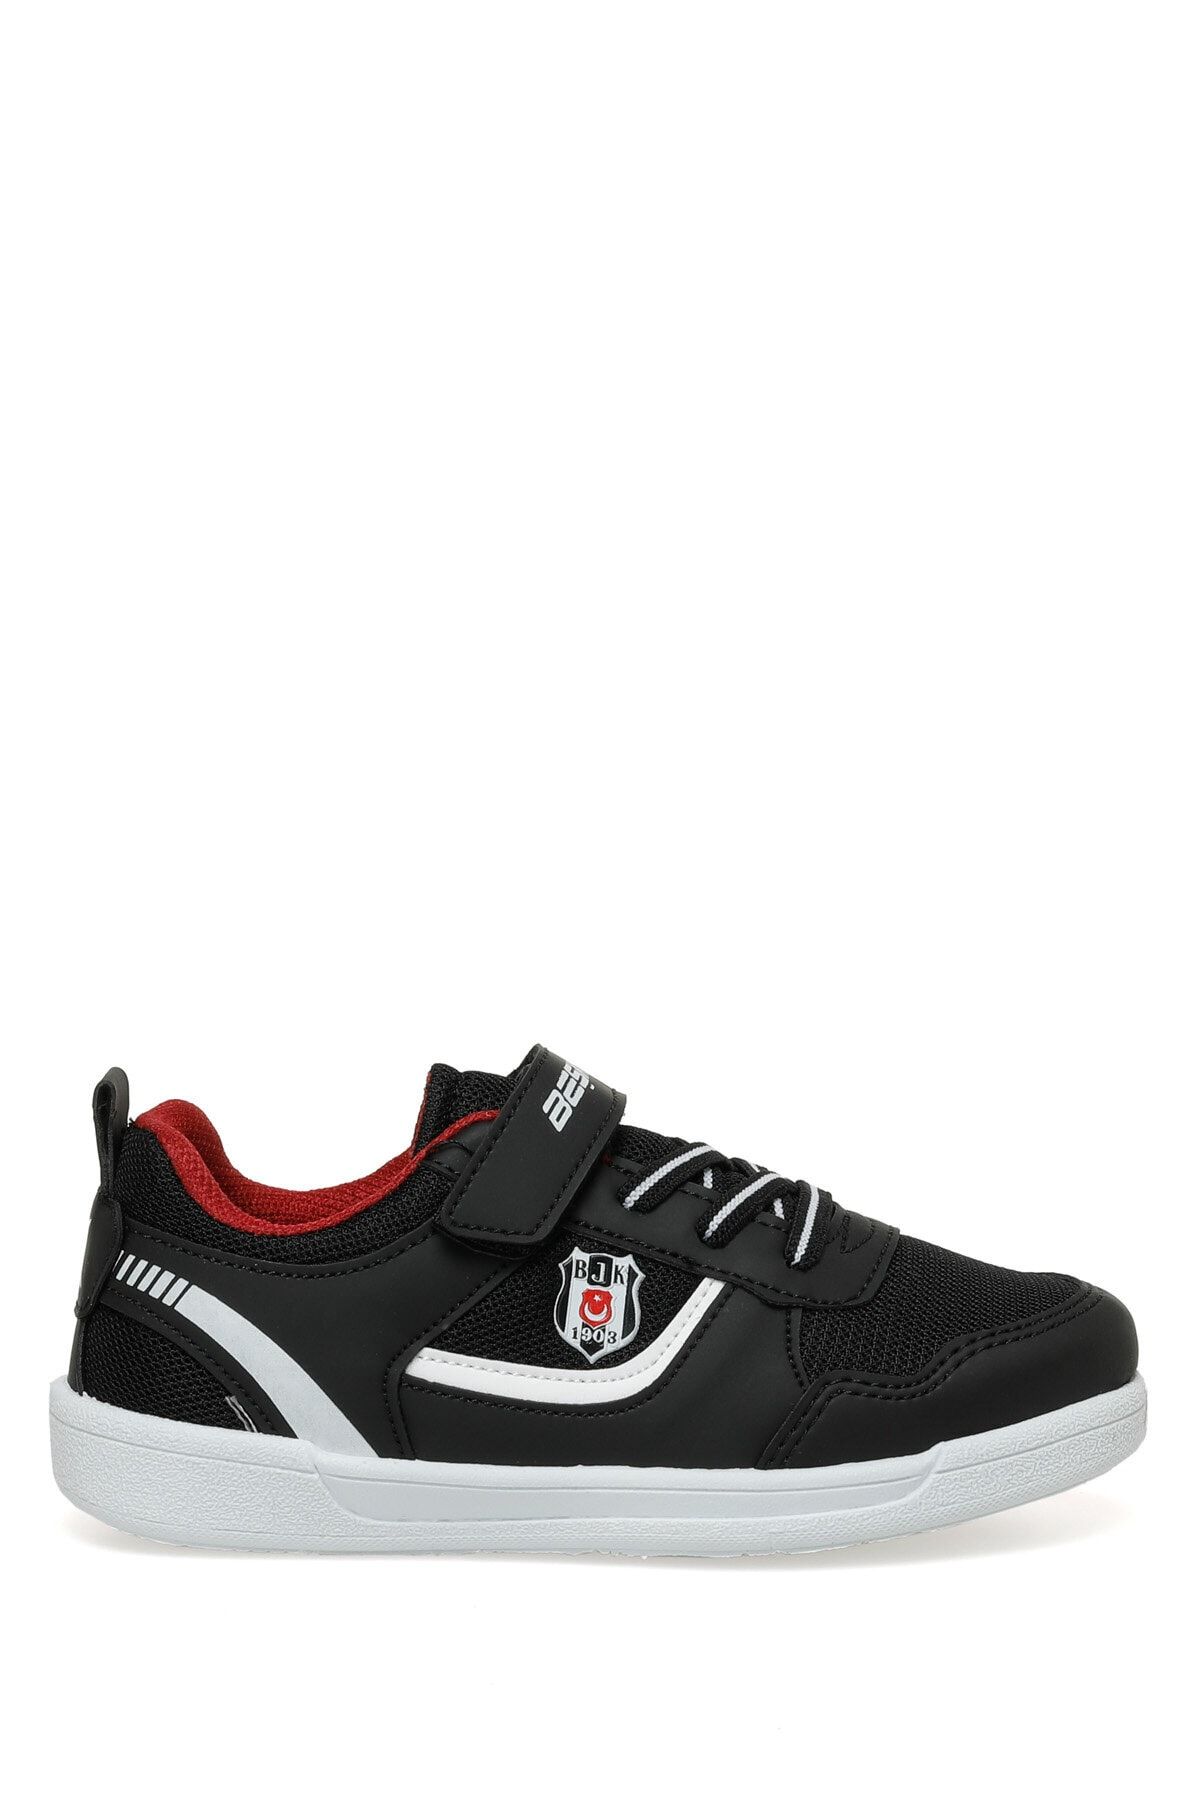 Beşiktaş Hornet J Tx 3fx Siyah Erkek Çocuk Sneaker